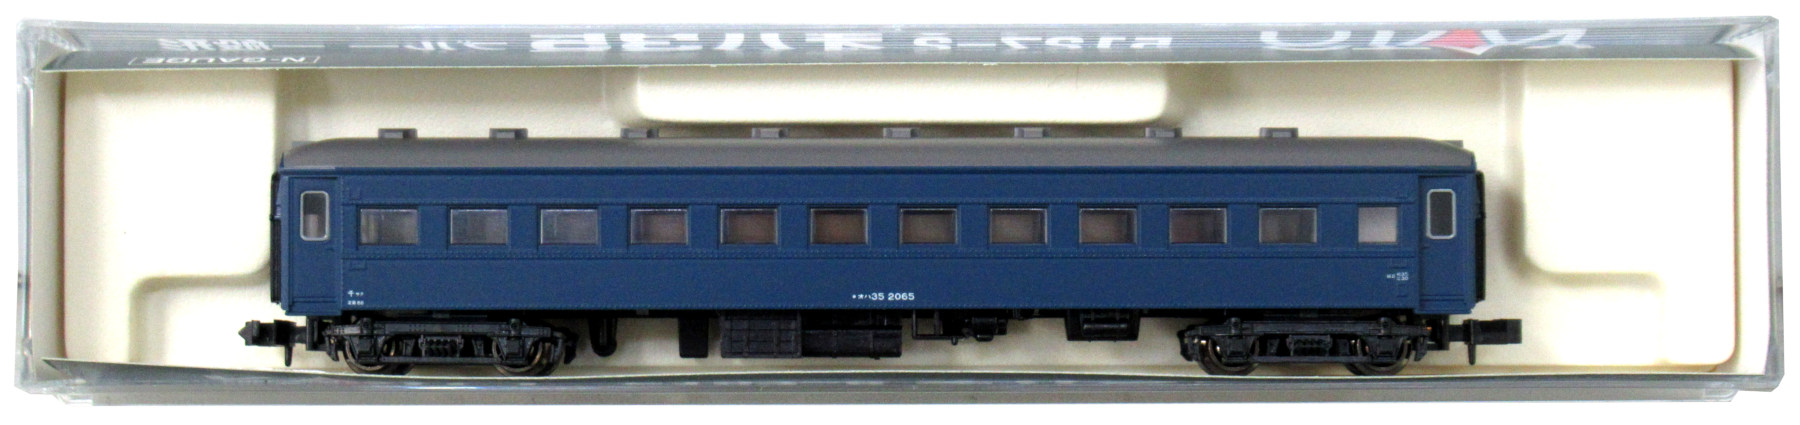 5127-2 オハ35 ブルー 一般形